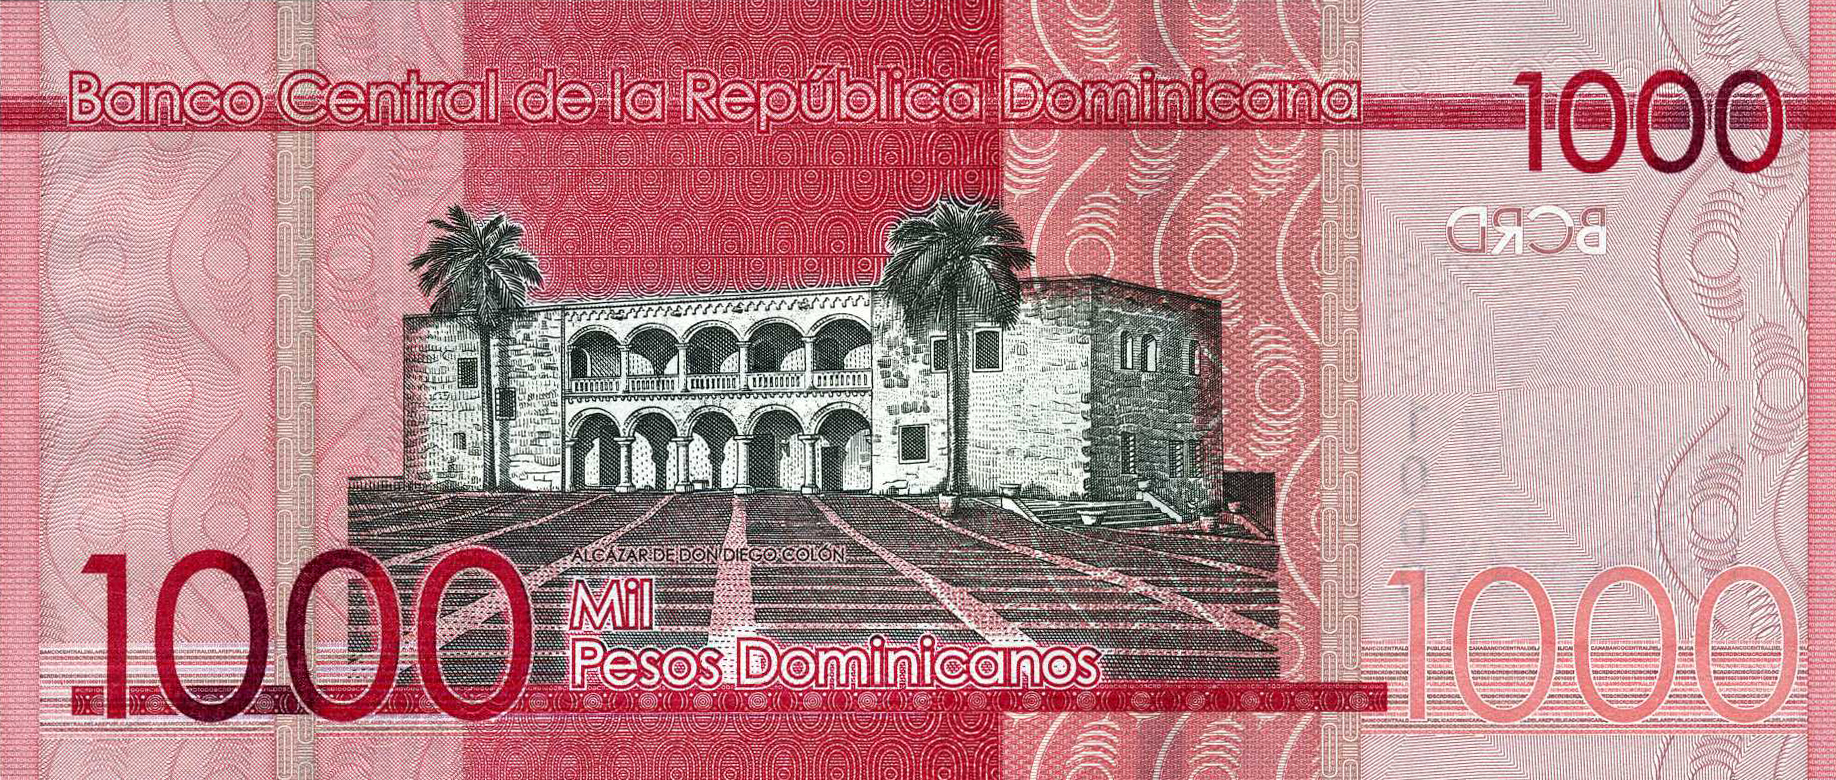 Dominican Republic New Date 2020 1 000 Peso Dominicano Note B731b Confirmed Banknotenews